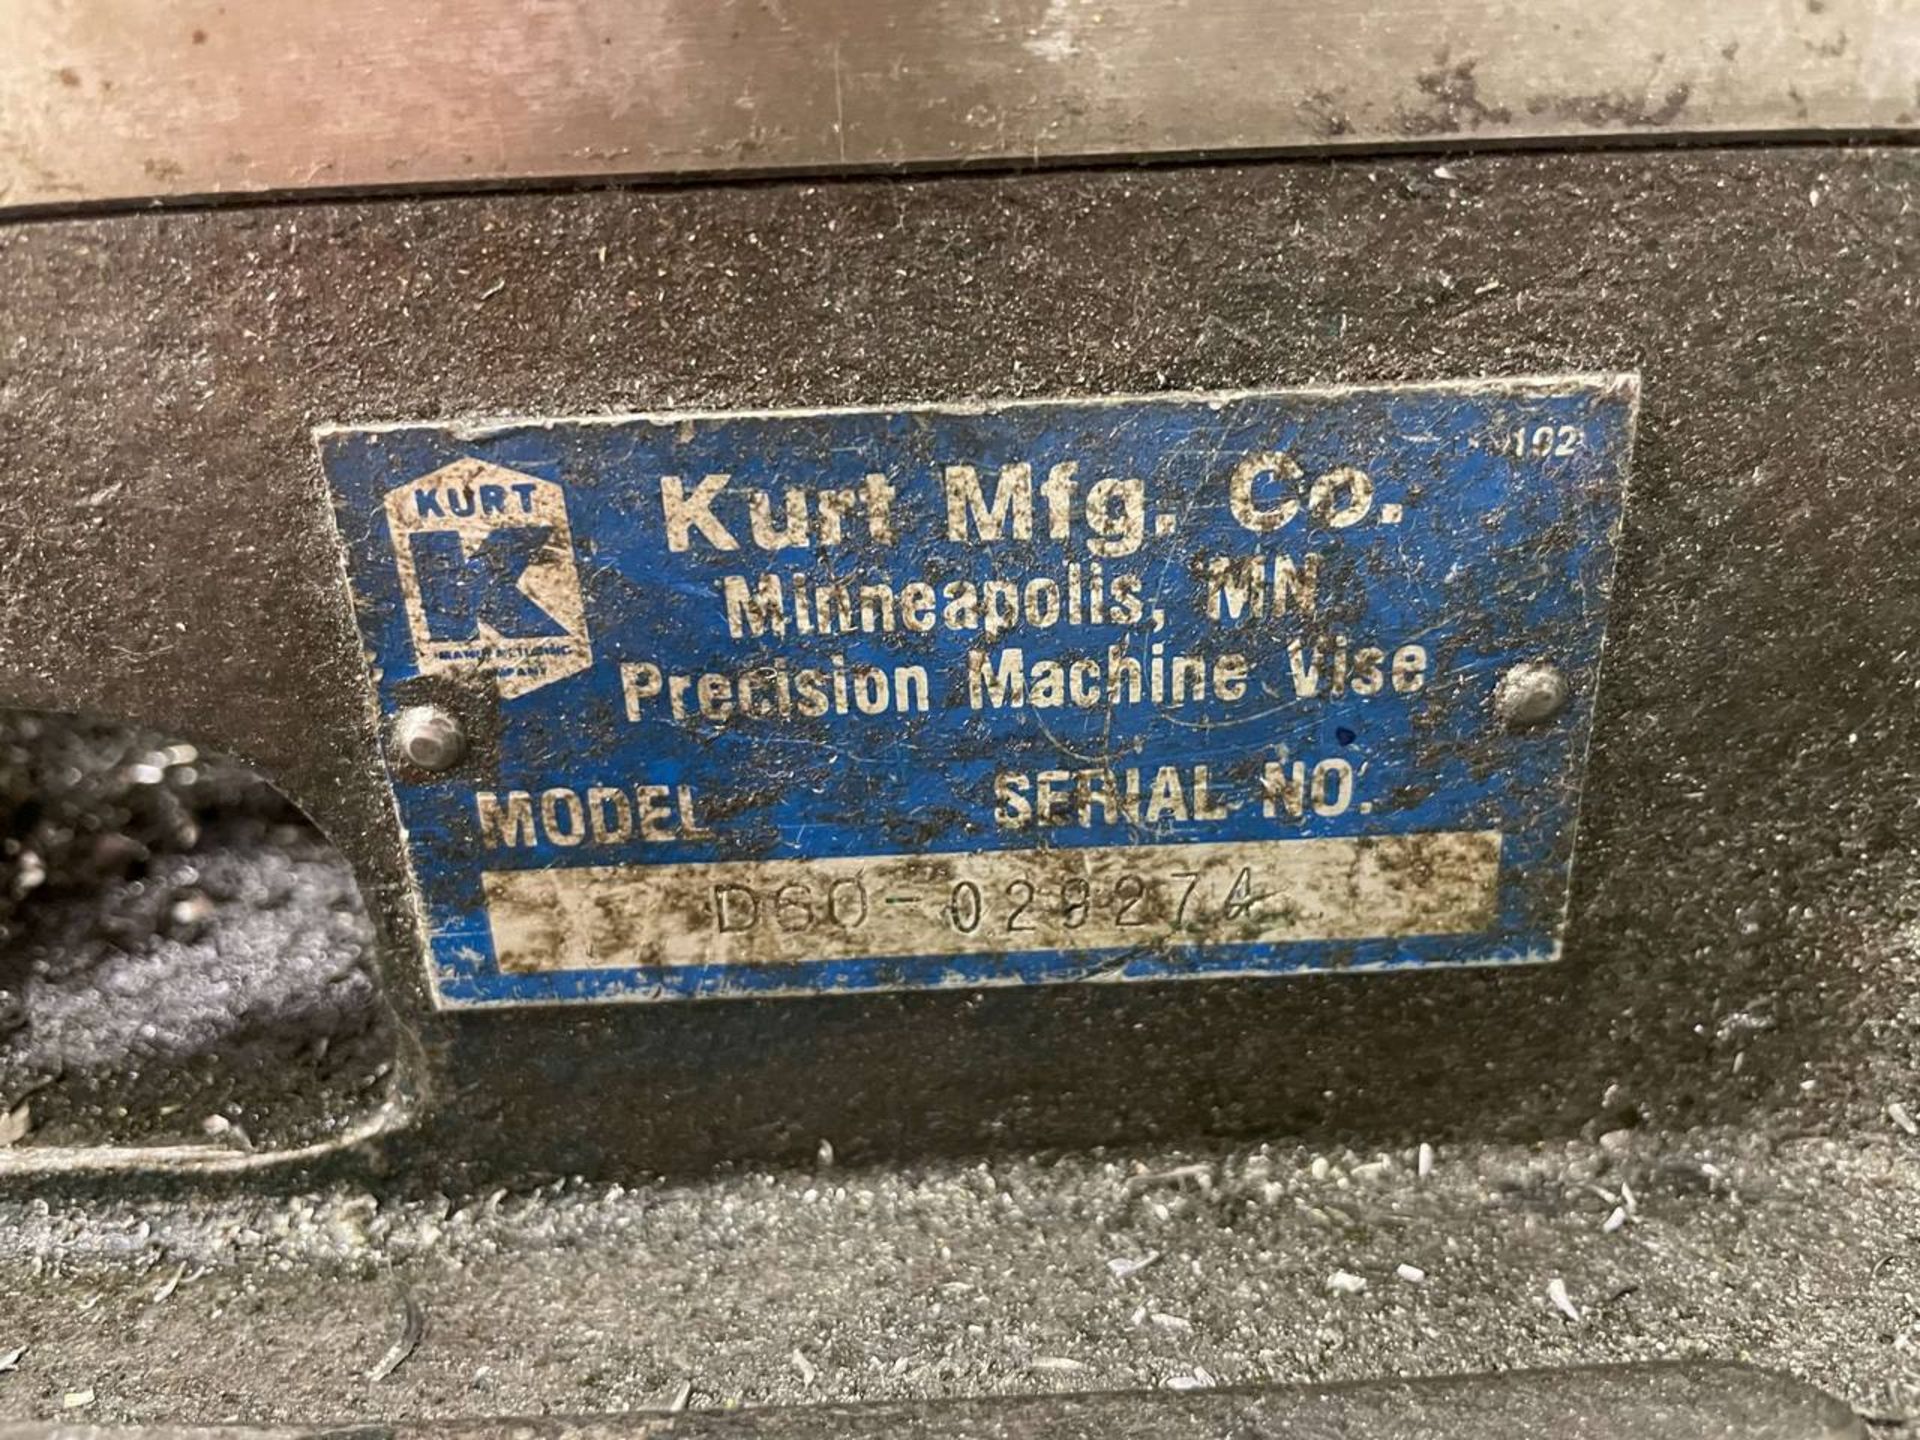 Kurt D60 6" Machine Vise - Image 3 of 3